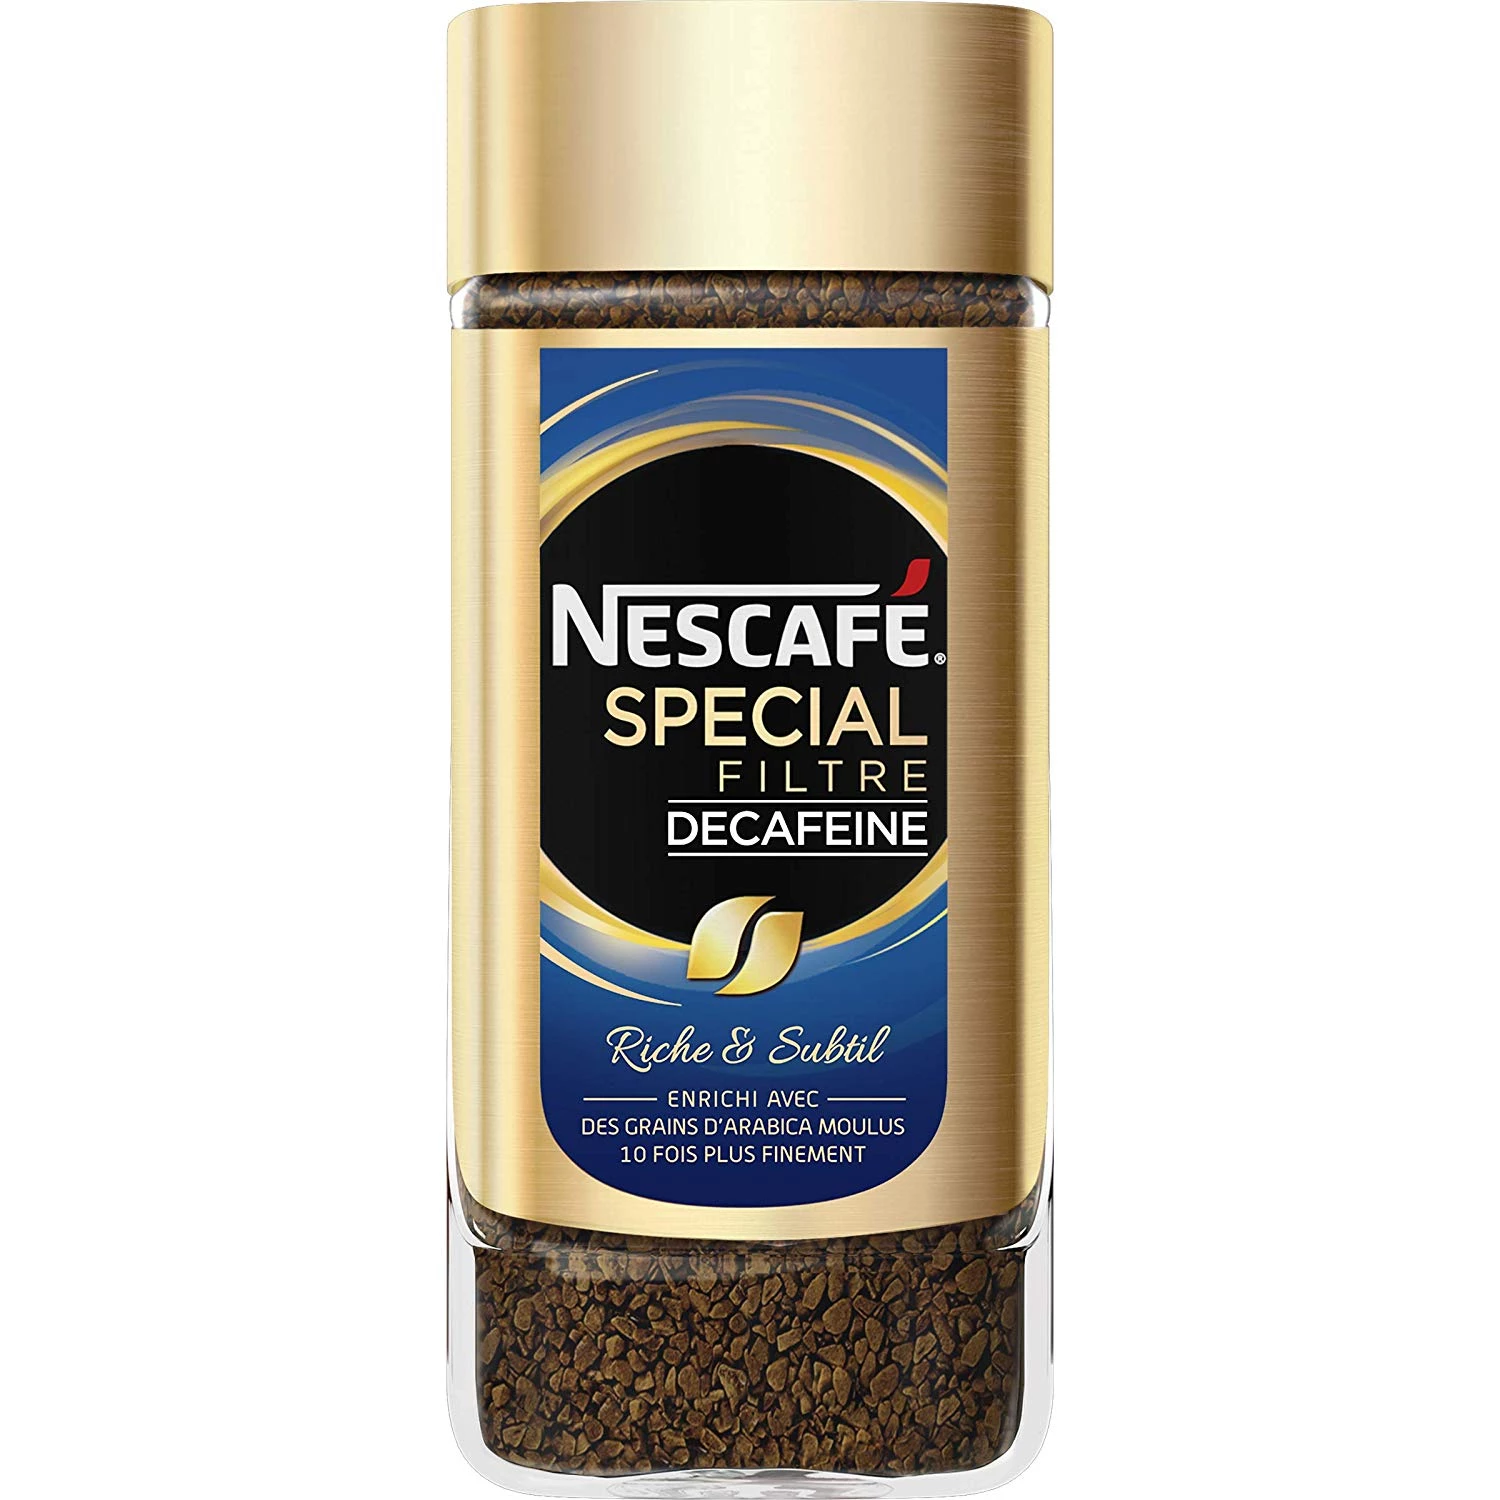 Special decaffeinated filter coffee 100g - NESCAFÉ